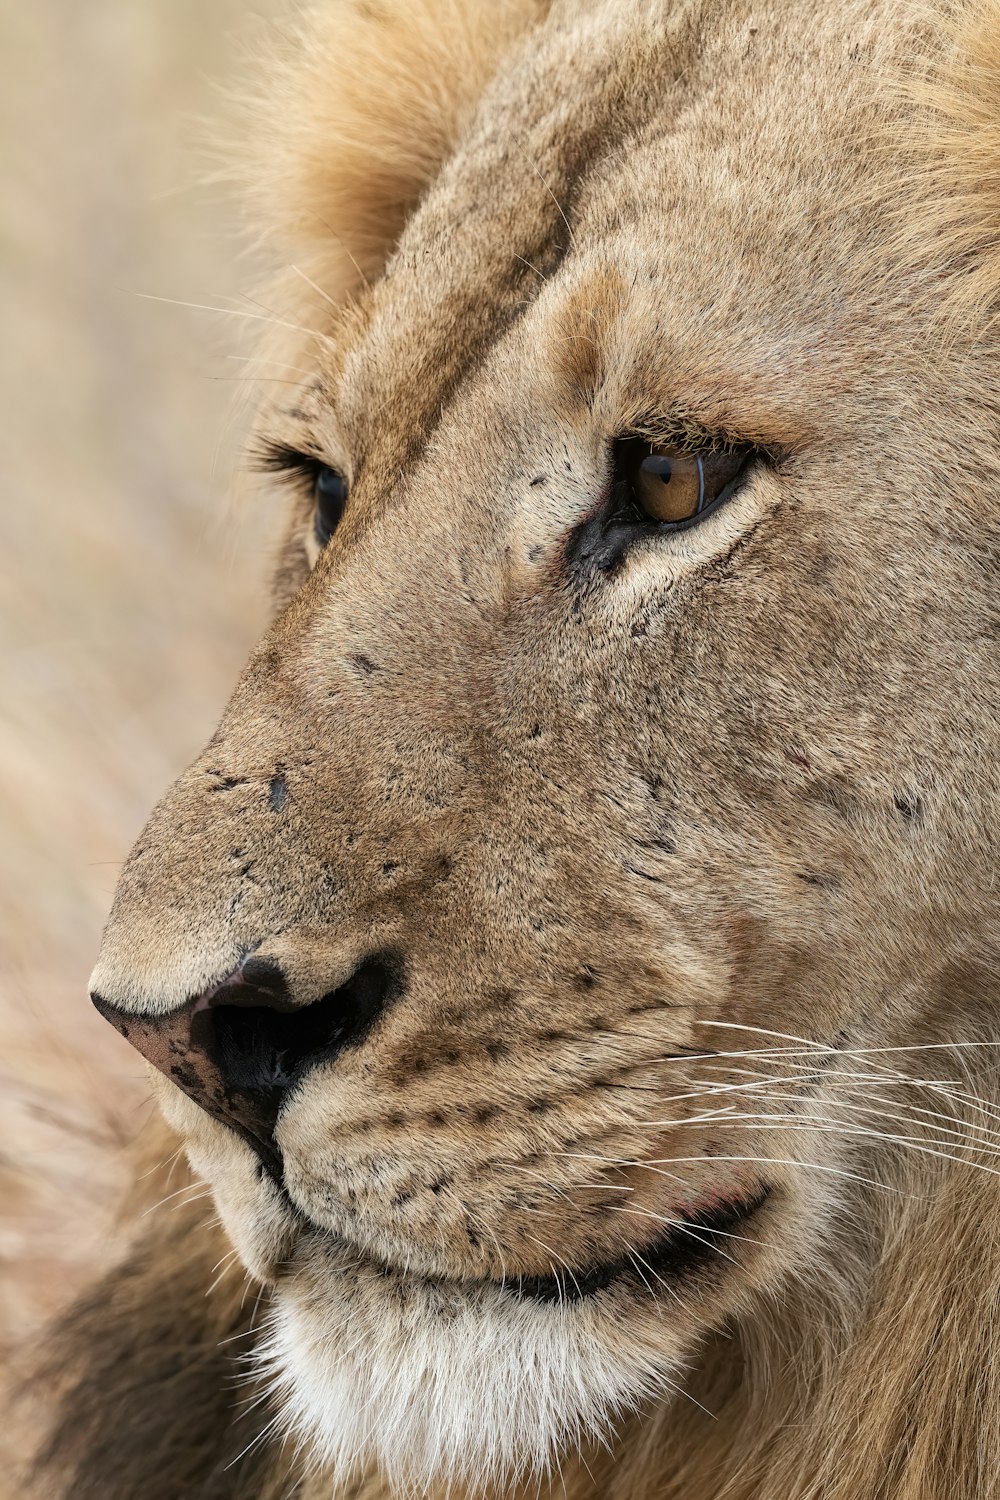 a close up of a lion